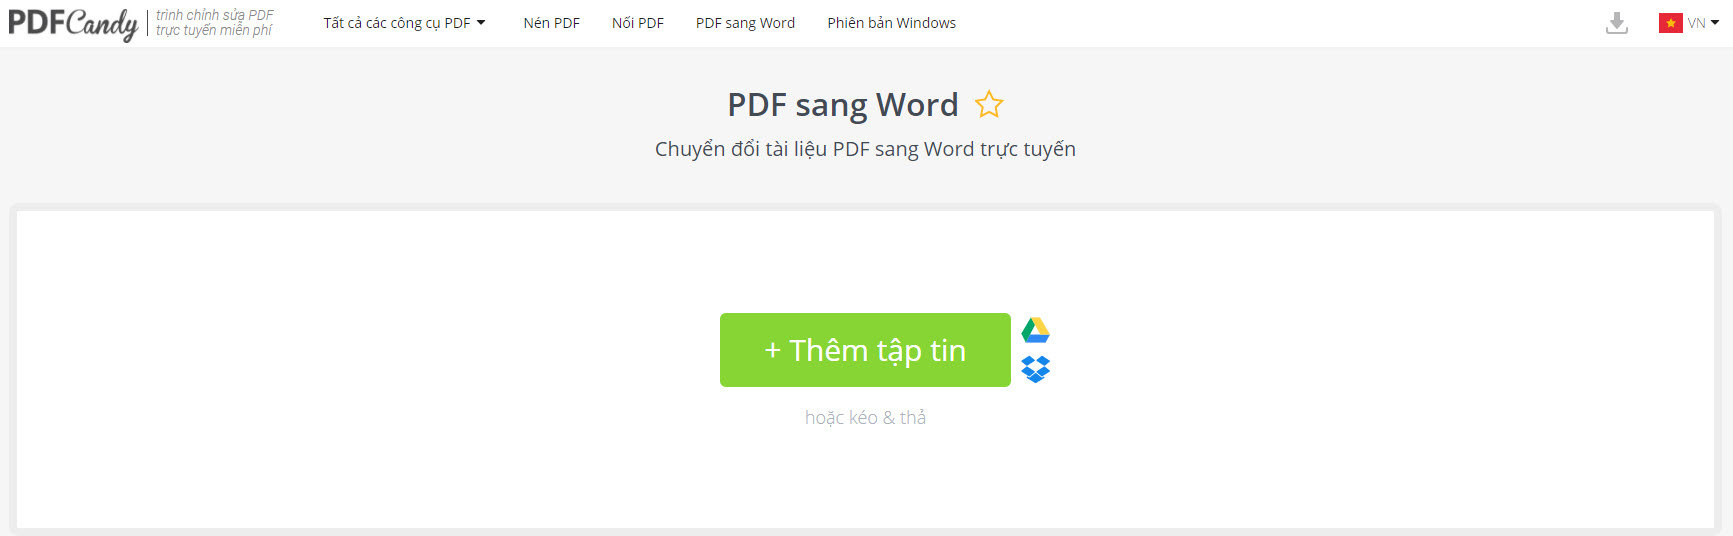 PDFCandy - Công cụ chuyển đổi PDF sang Word Online, ngoại tuyến cho PC - Hình 1